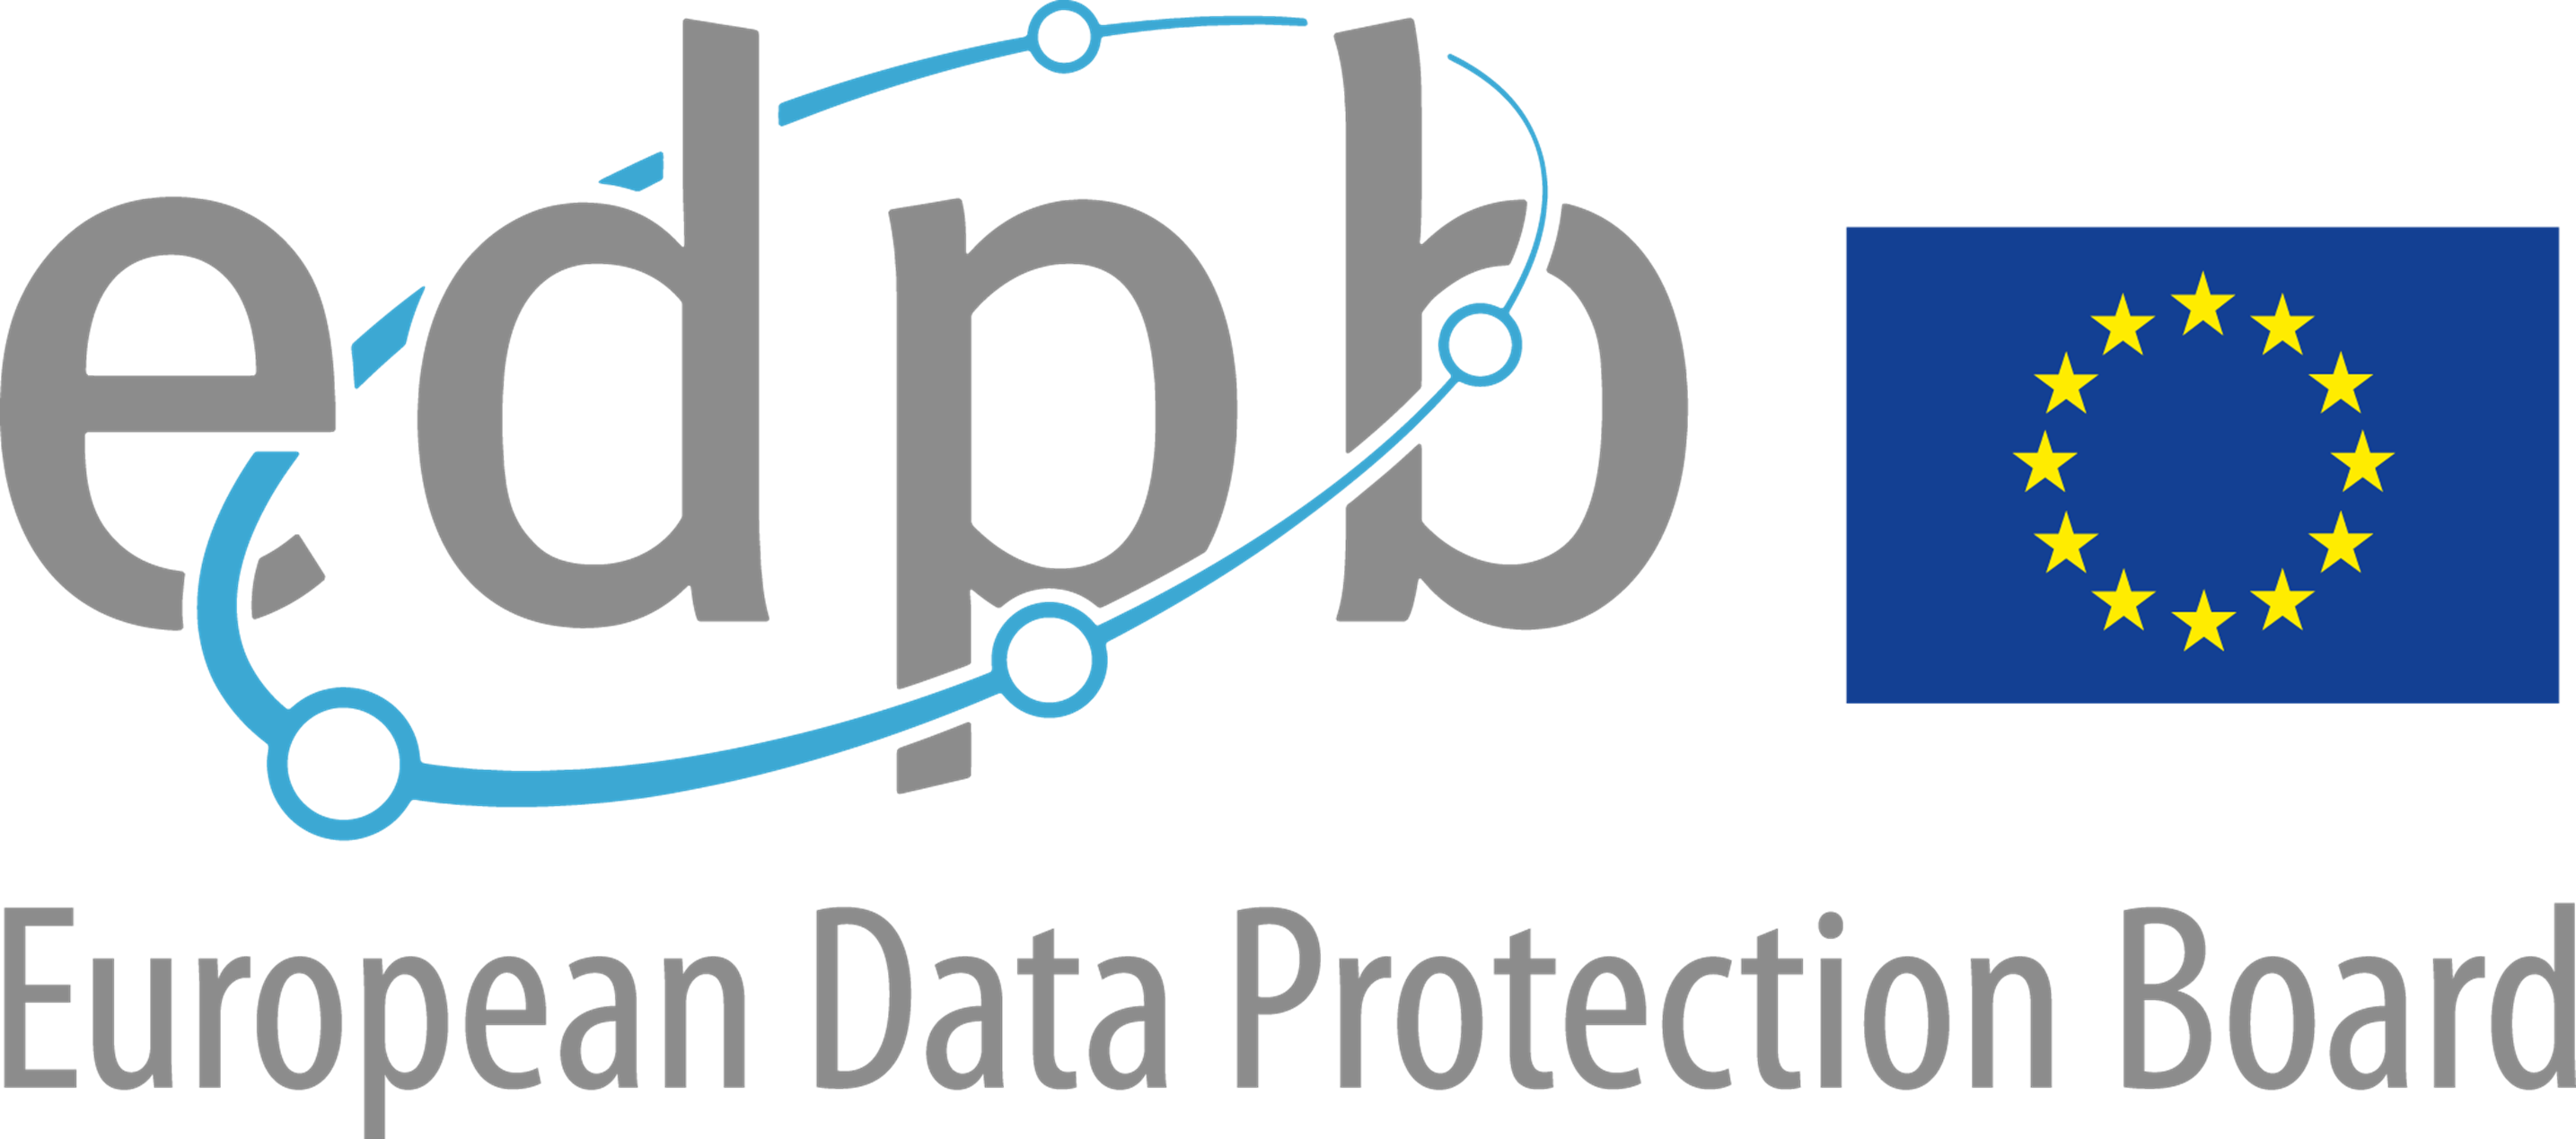 EDPB šetřil postavení pověřenců pro ochranu osobních údajů